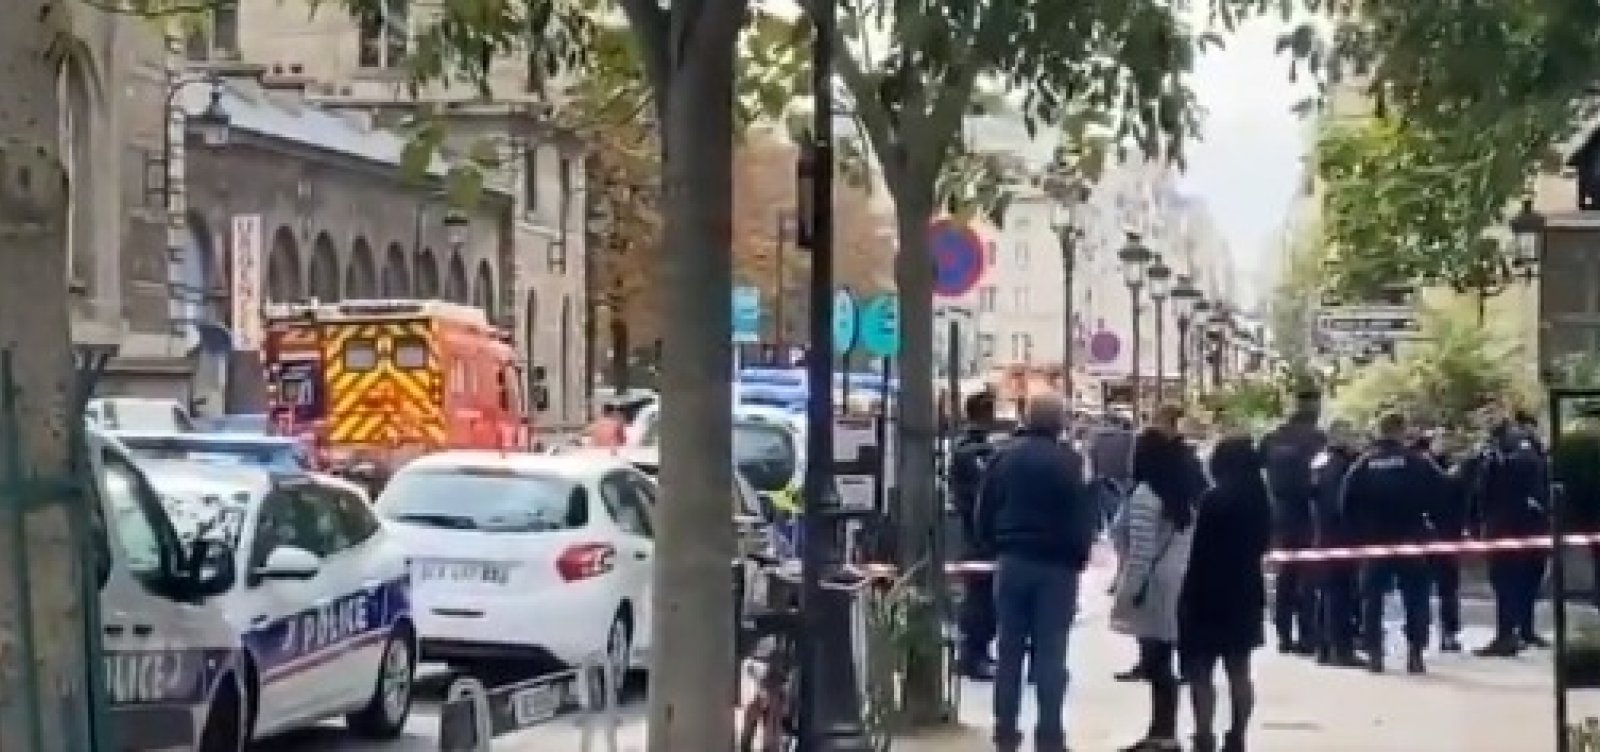 Homem com faca ataca quartel de Paris e mata policial